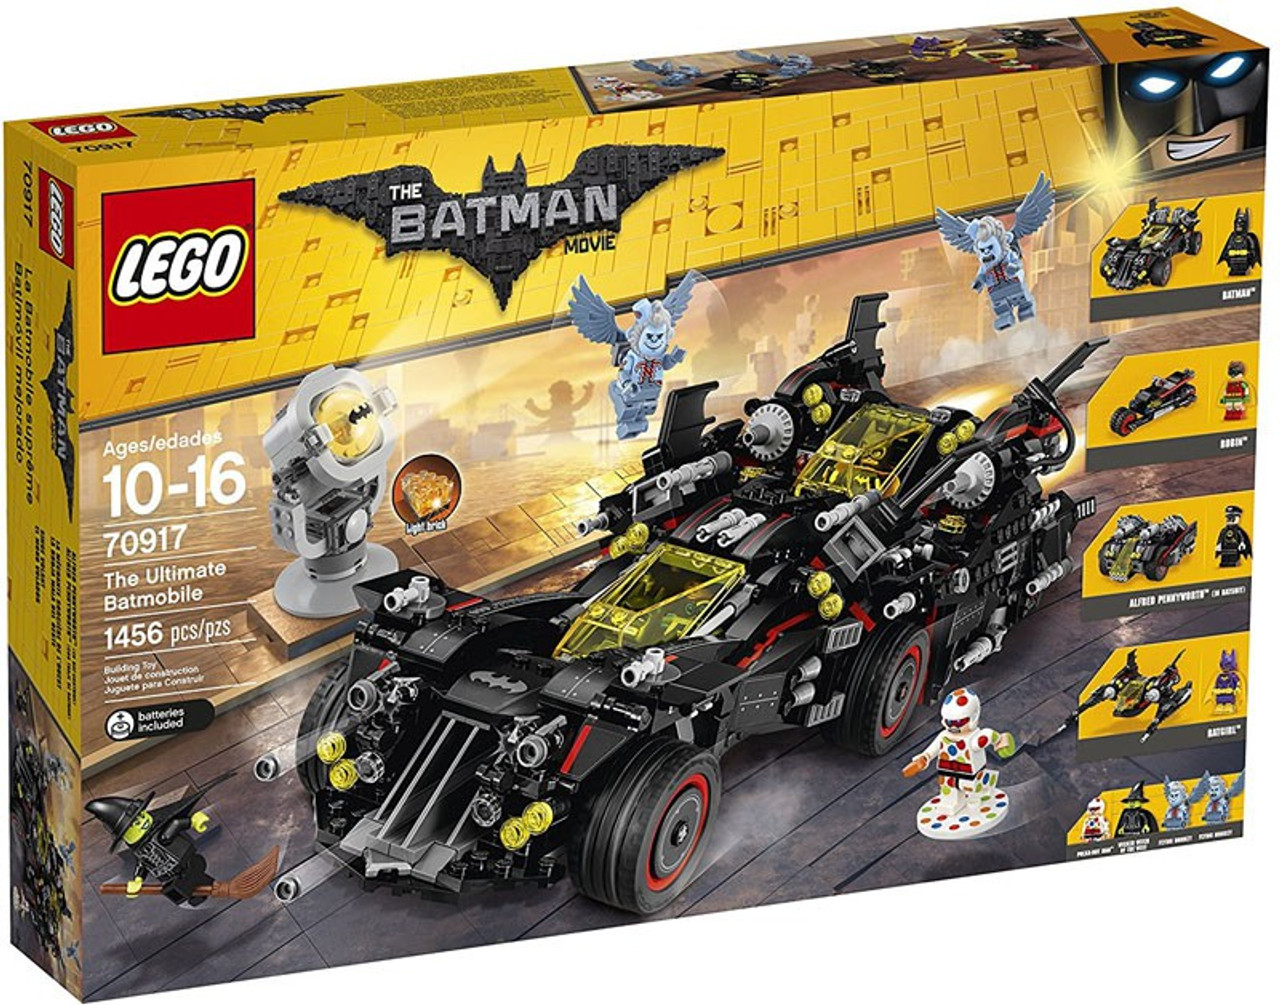 Lego Dc The Batman Movie The Ultimate Batmobile Set 70917 Toywiz - details about roblox mega bundle 16 piece set 2018 pvc game roblox toys 7cm figures gaming